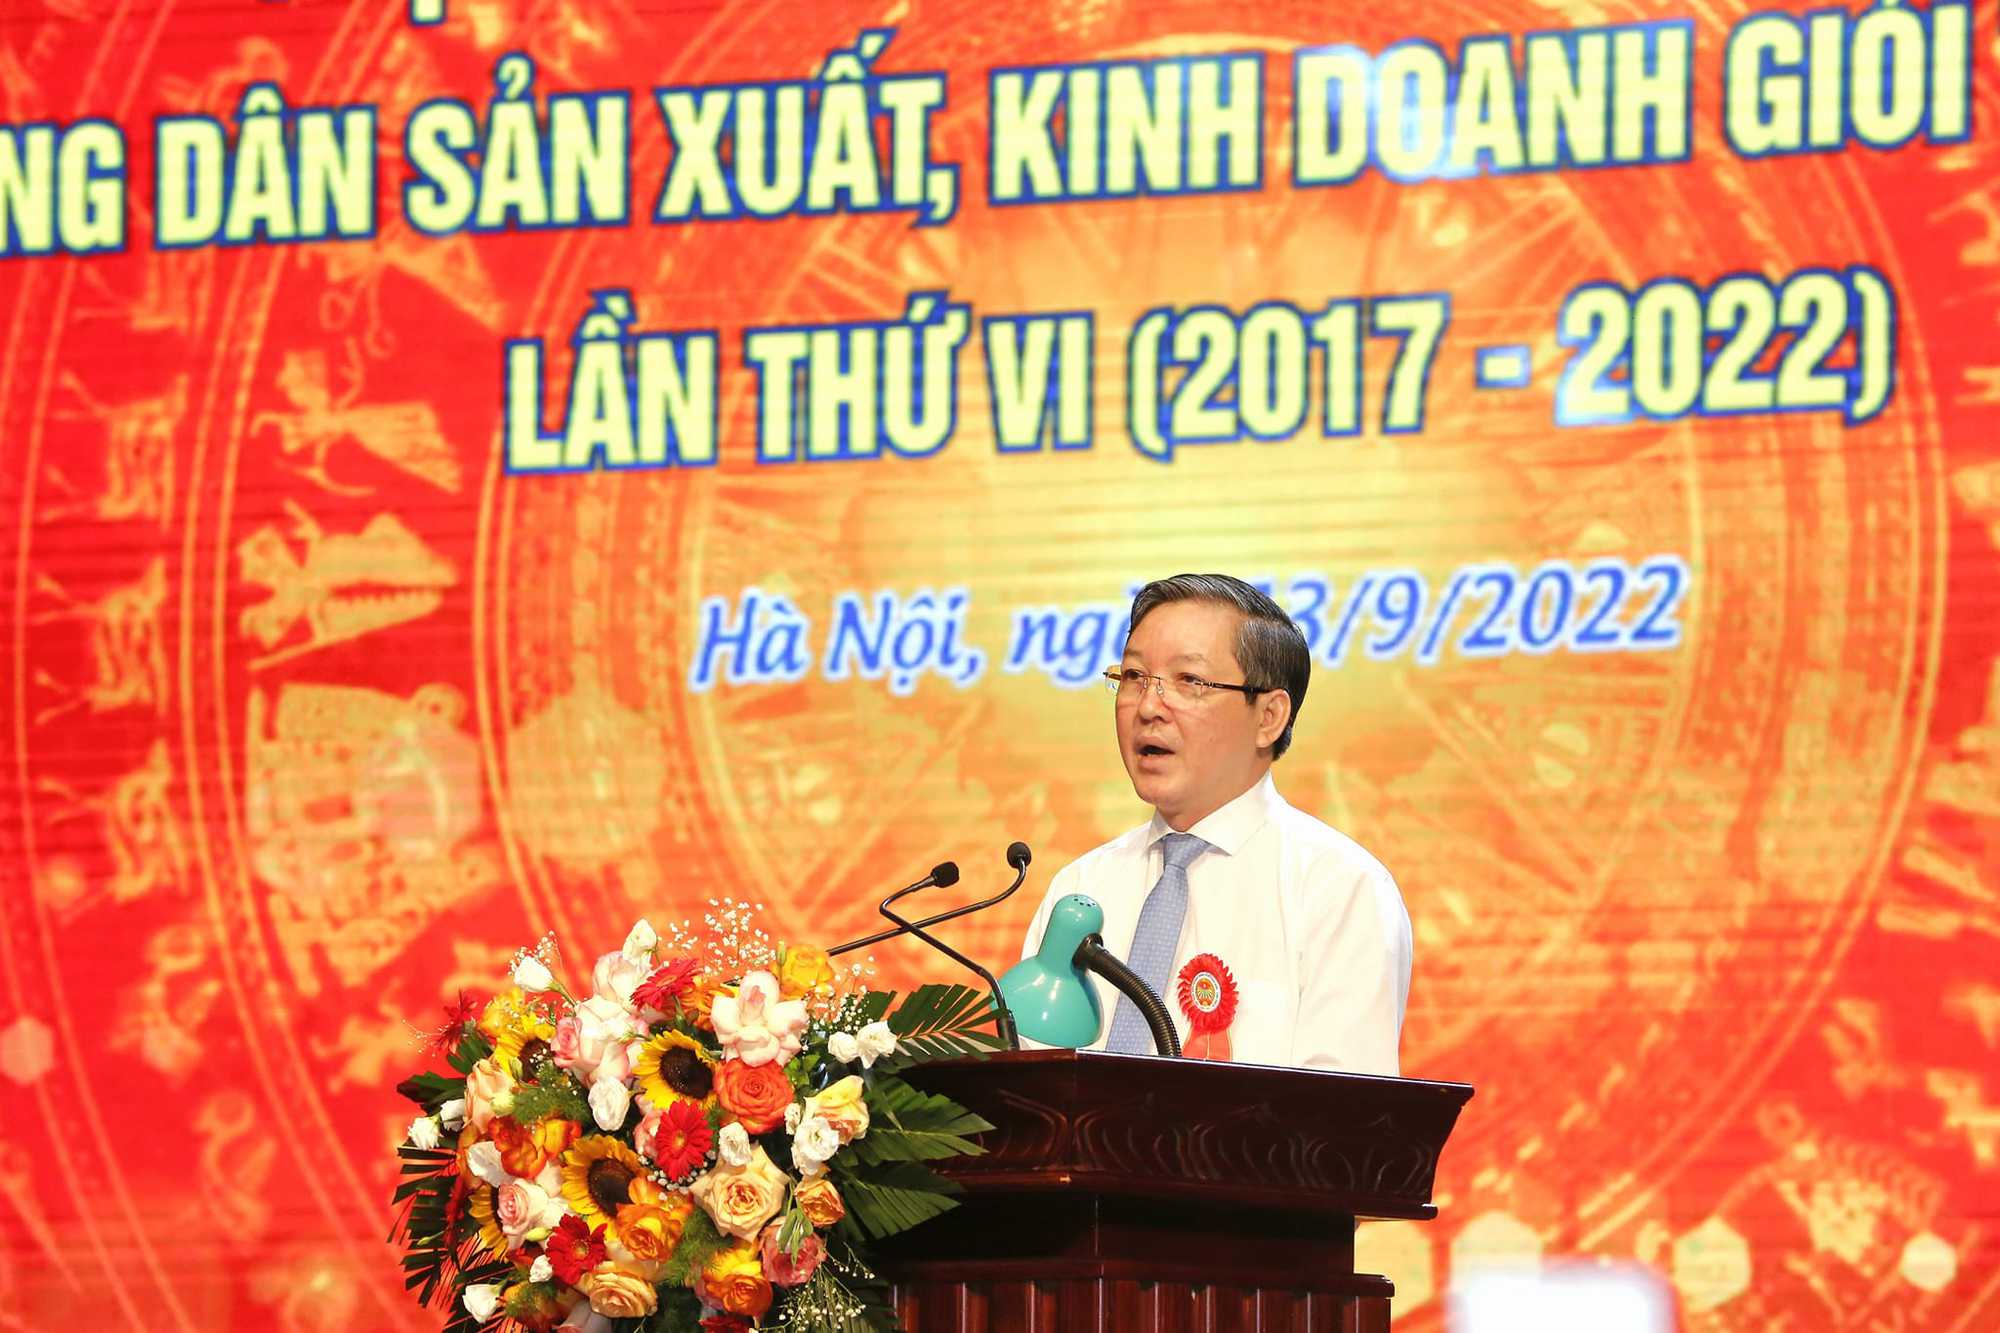 Toàn văn bài phát biểu của Chủ tịch Hội NDVN Lương Quốc Đoàn tại Hội nghị biểu dương nông dân SXKD giỏi toàn quốc - Ảnh 1.